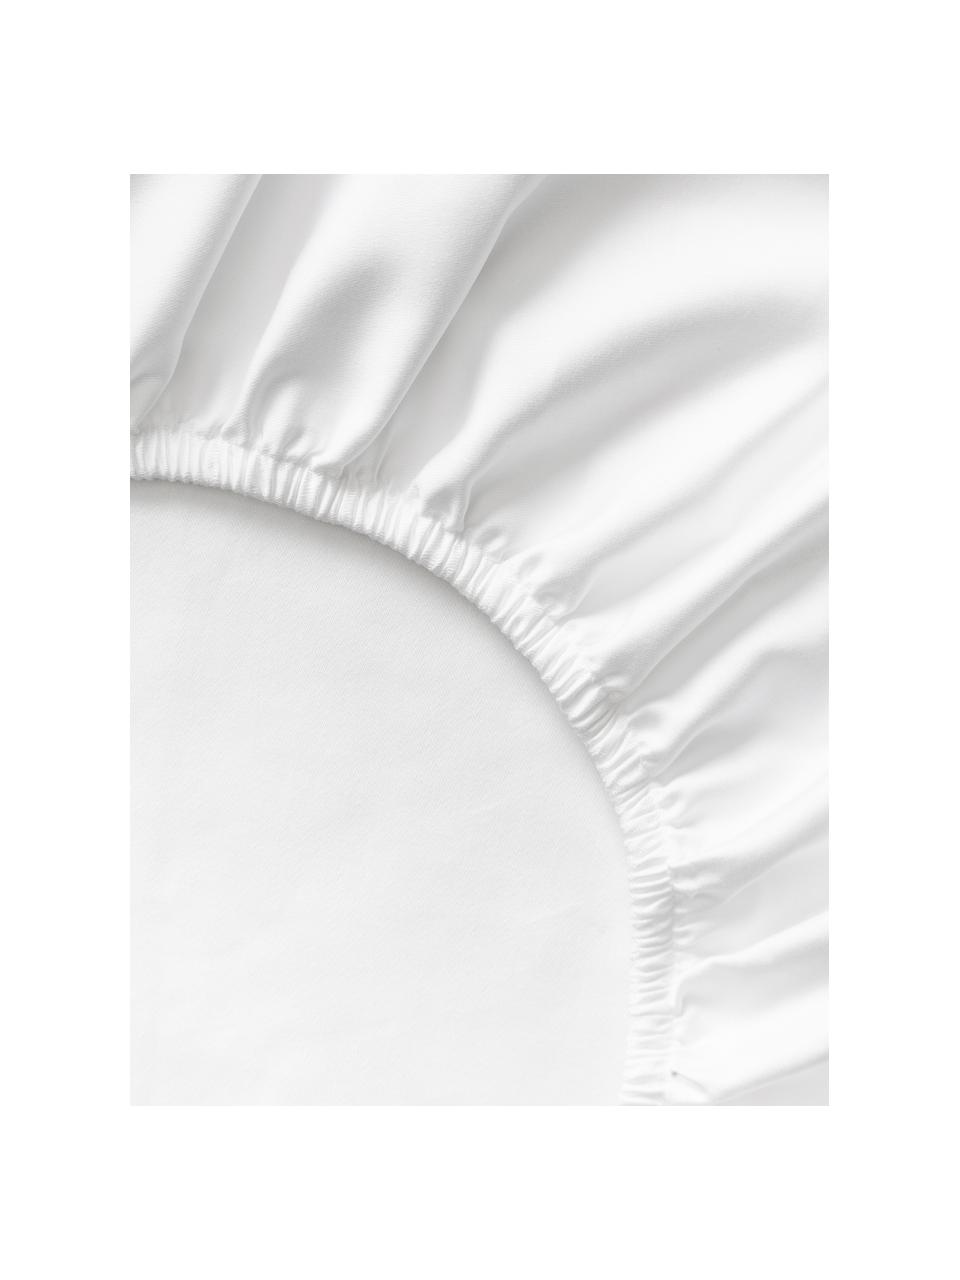 Sábana bajera de satén Premium, Blanco, Cama 90 cm (90 x 200 x 35 cm)